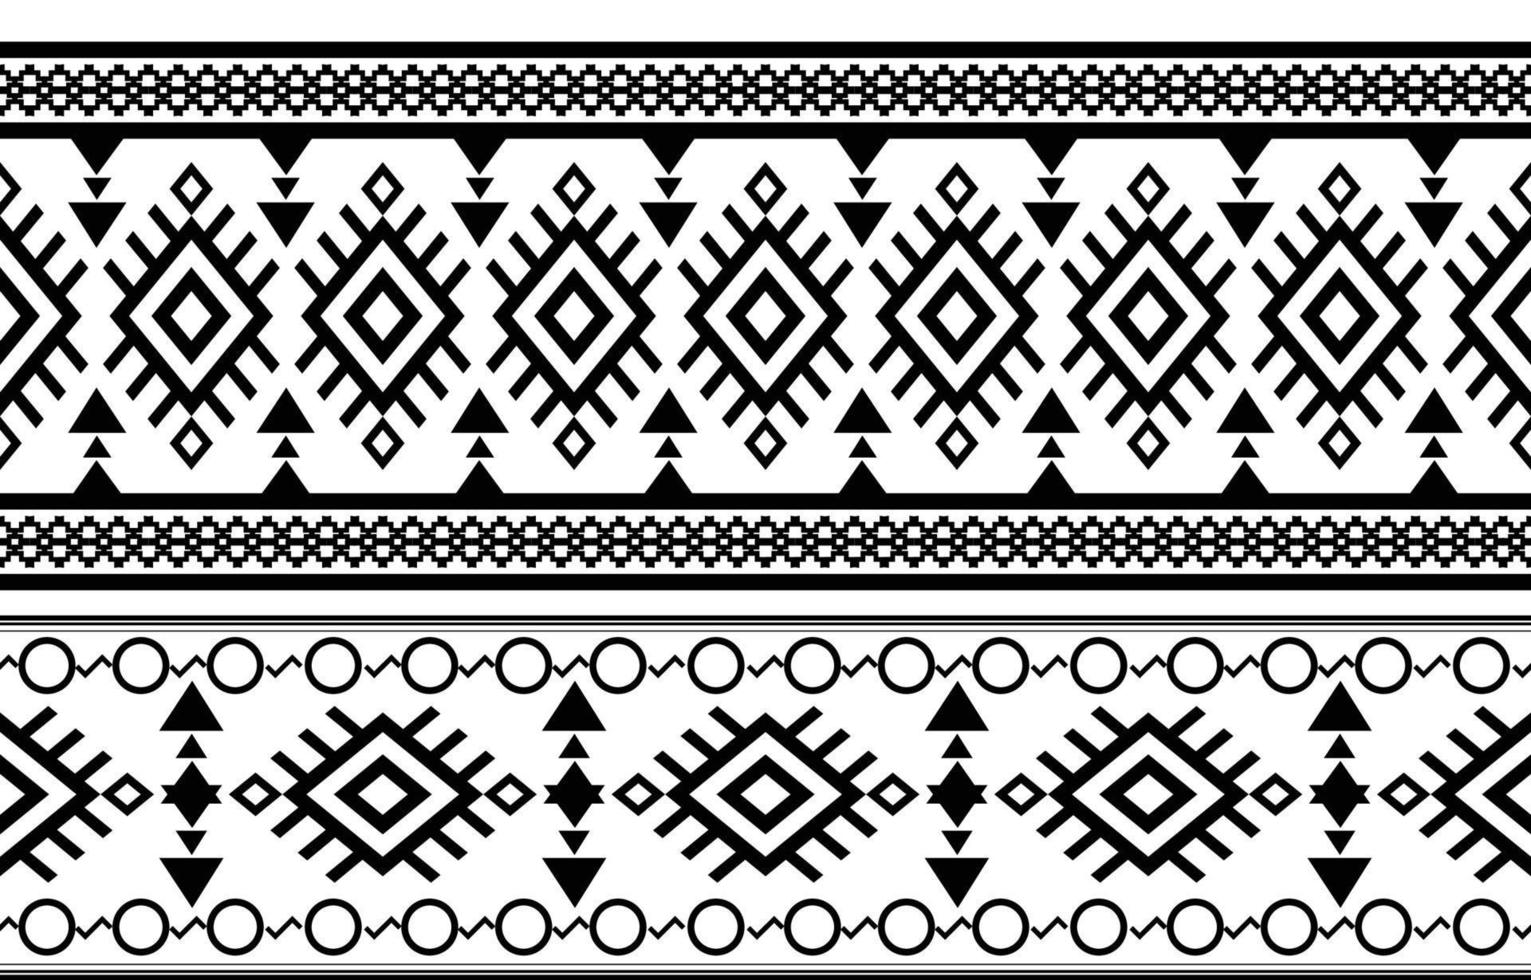 Afrikaanse tribal zwart-wit abstracte etnische geometrische patroon. ontwerp voor achtergrond of wallpaper.vector illustratie om stofpatronen, vloerkleden, overhemden, kostuums, tulband, hoeden, gordijnen af te drukken. vector